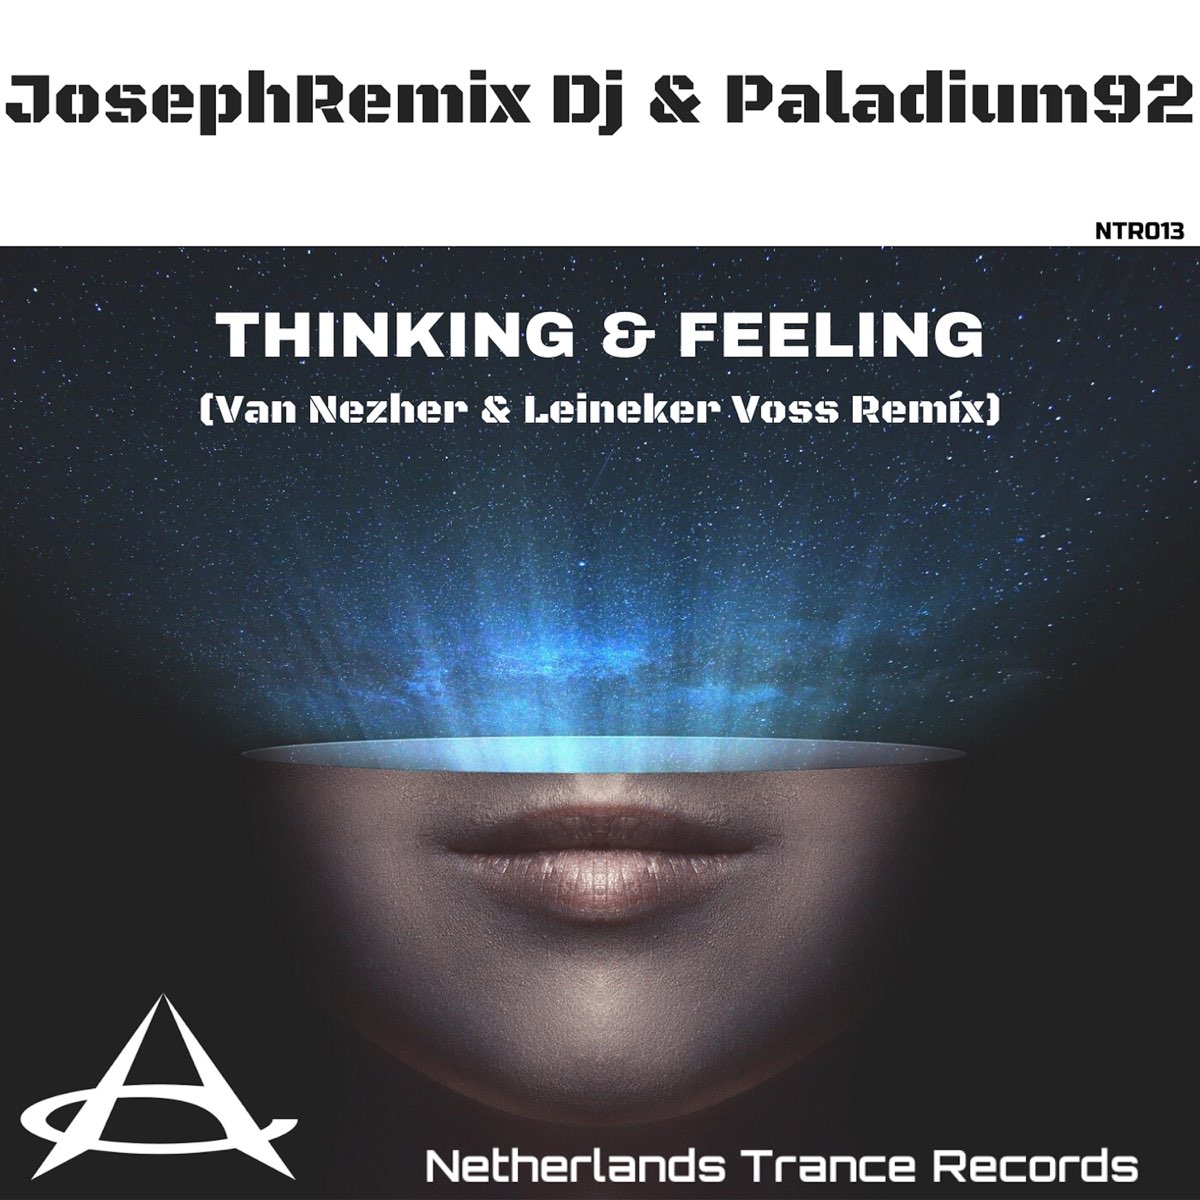 Think 1 feelings. JOSEPHREMIX paladium92. JOSEPHREMIX paladium92 Spotify. Think feel.